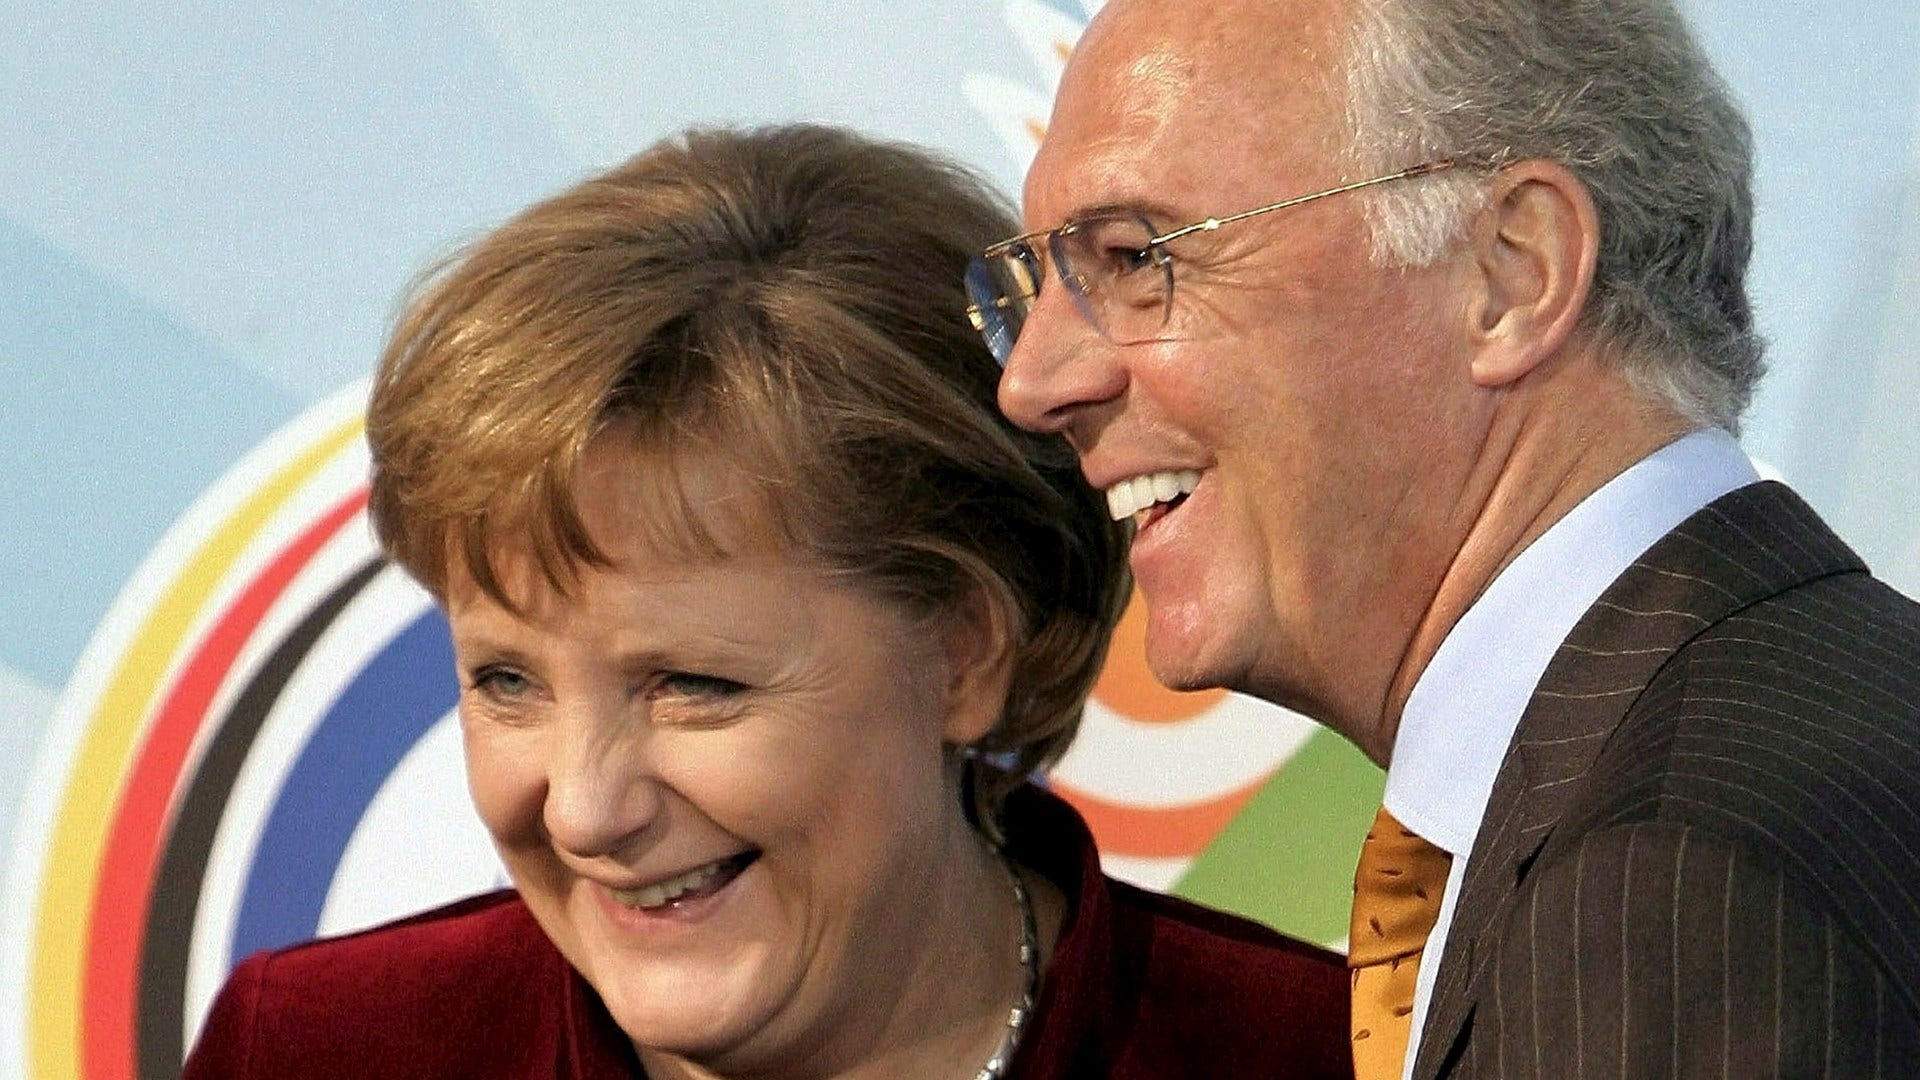 Tysklands före detta förbundskansler Angela Merkel poserar tillsammans med Franz Beckenbauer i Berlin, 2006.